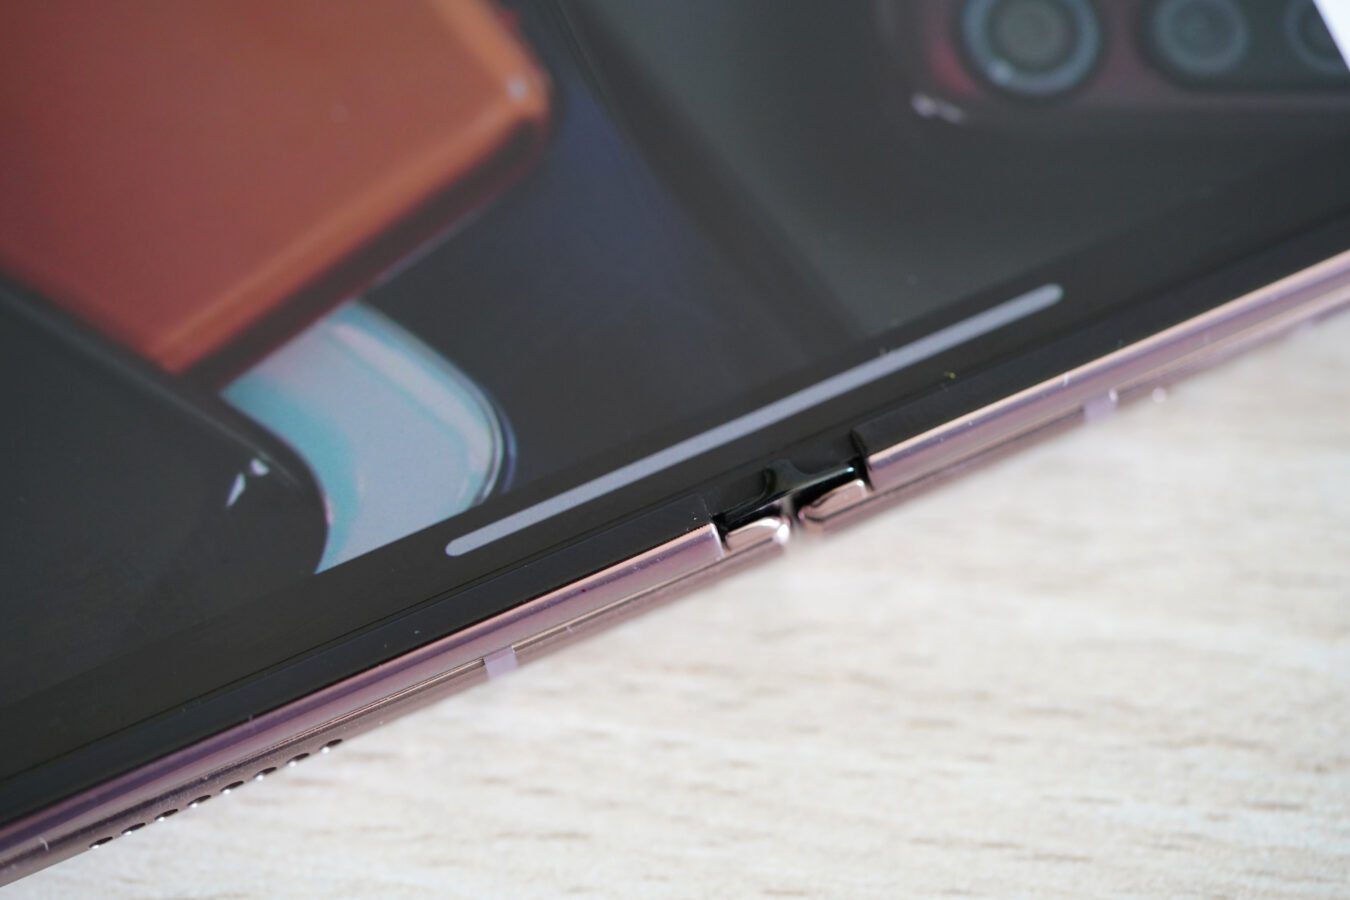 Samsung patentiert ein faltbares Smartphone mit Sensoren, die wir von ... einem Fitnessband erwarten würden 163